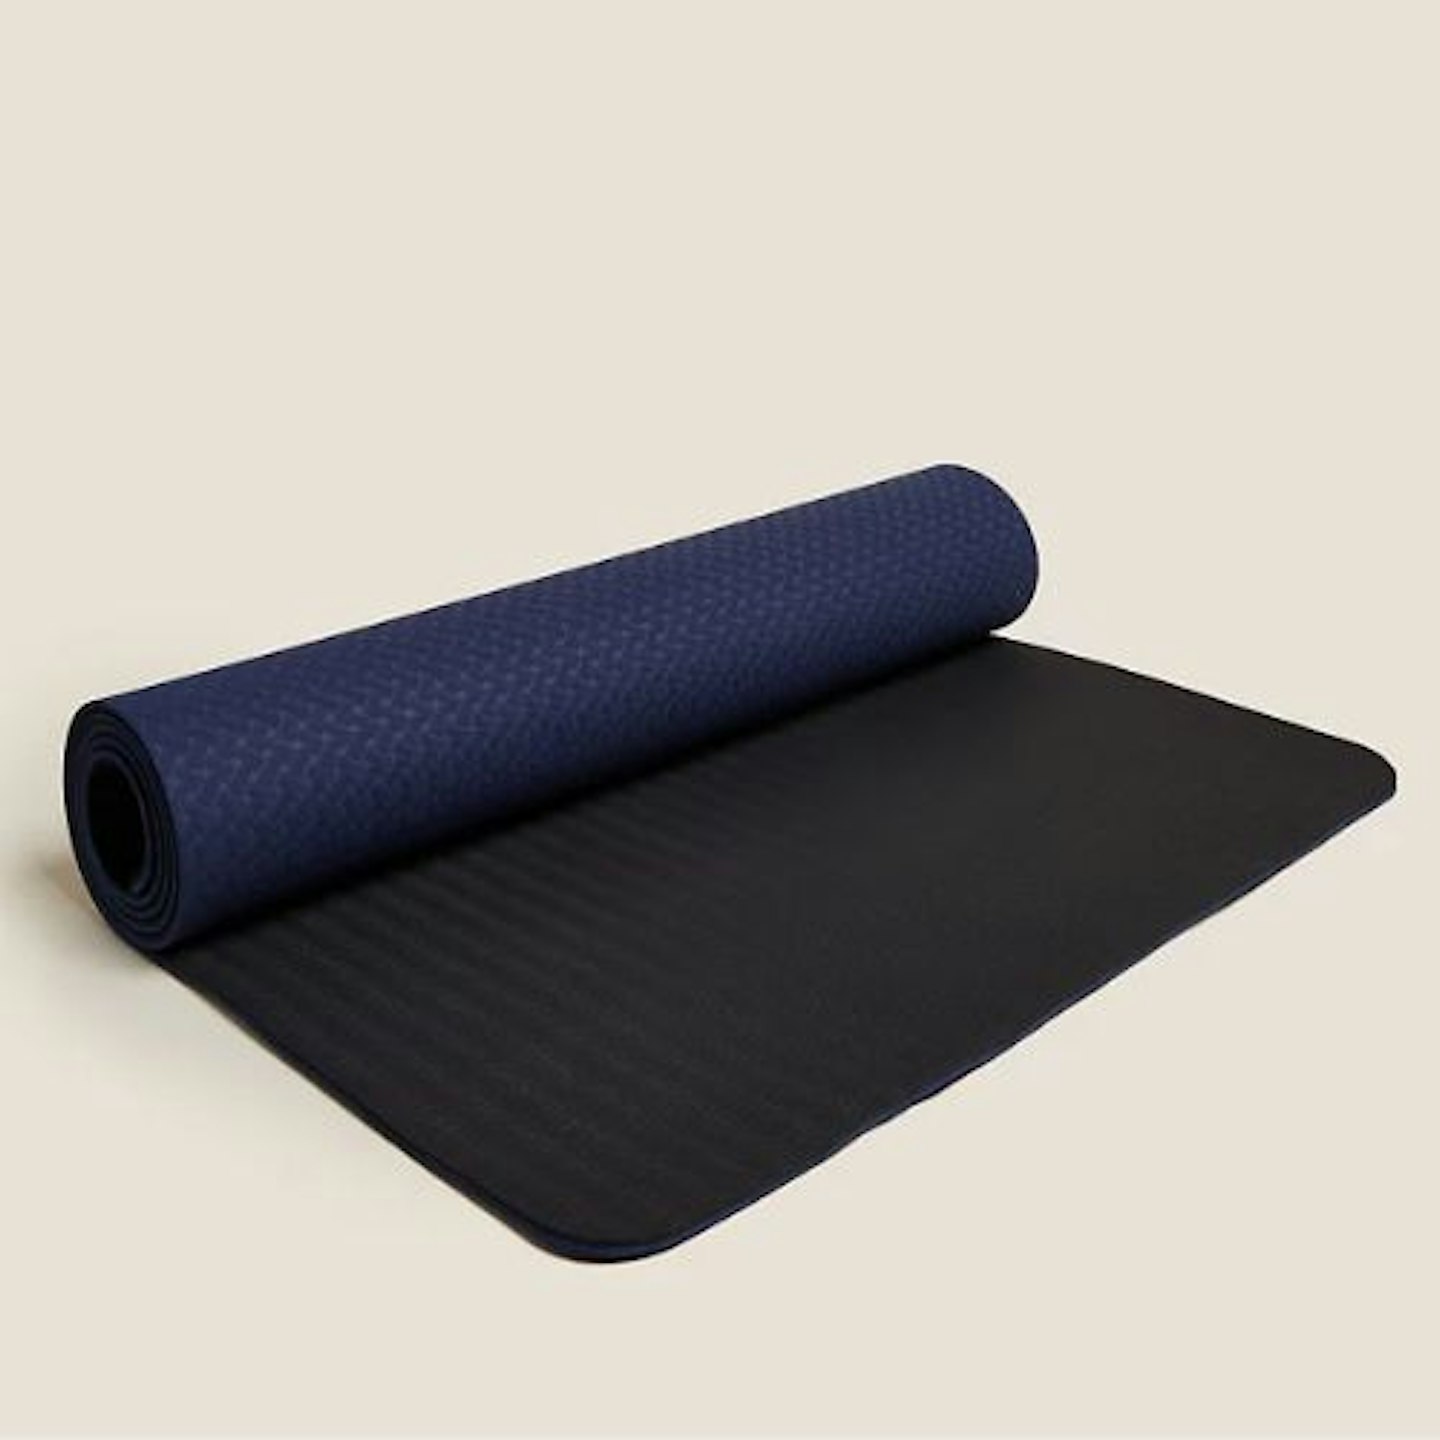 Goodmove, Antibacterial Non-Slip Yoga Mat